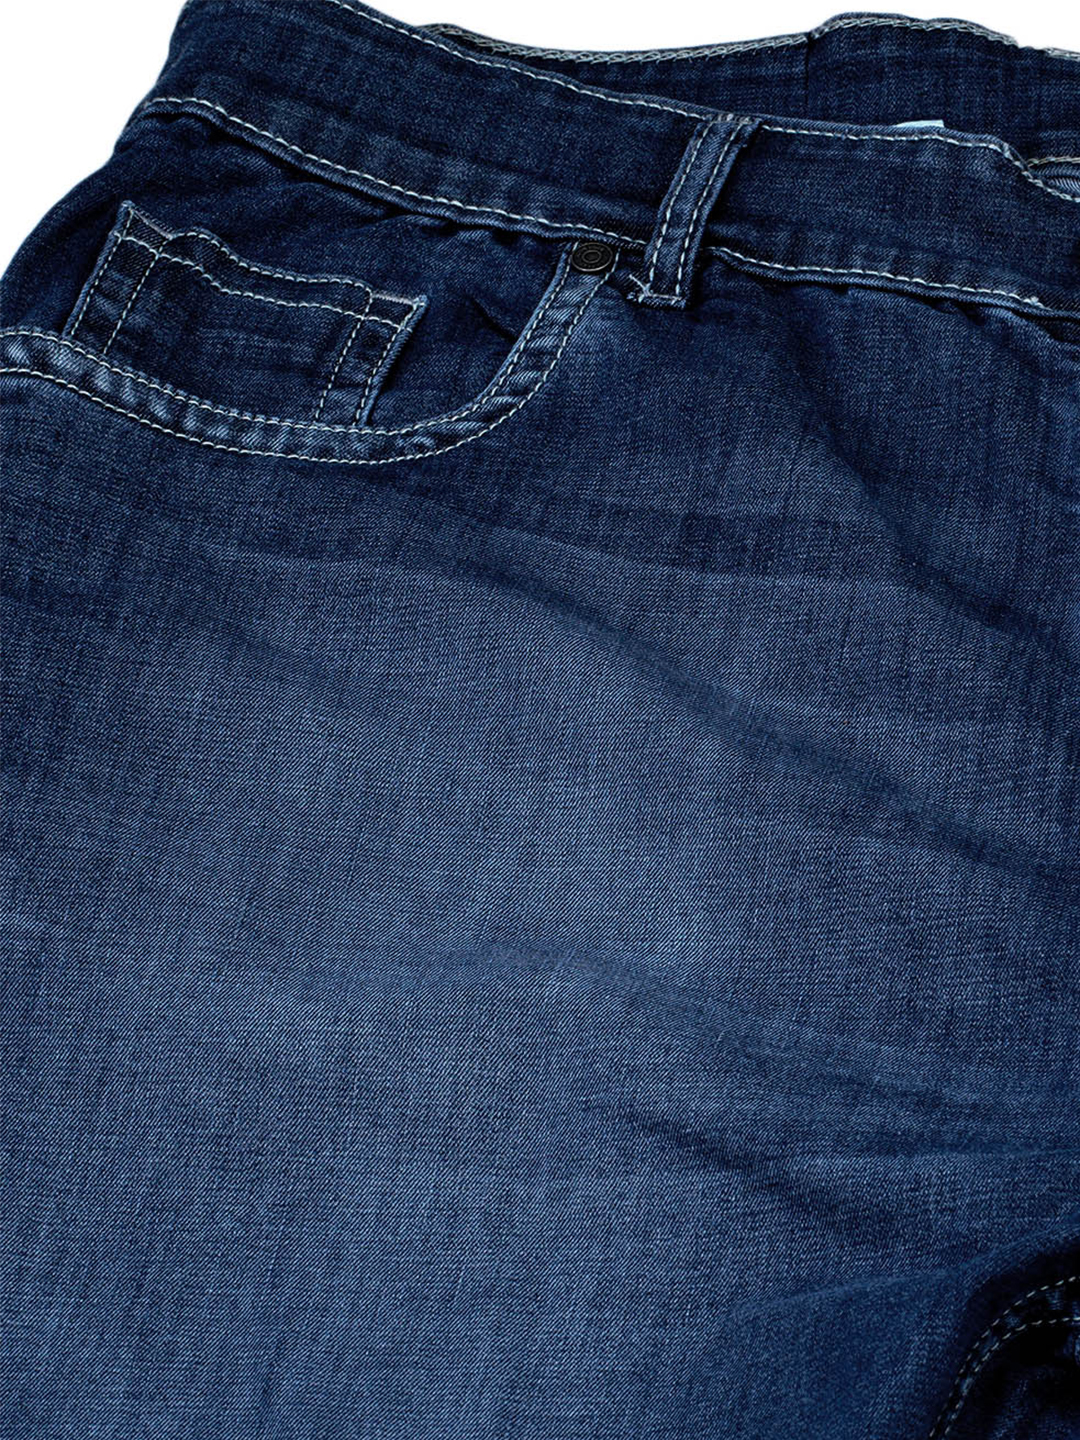 bottomwear/jeans/JPJ12118/jpj12118-2.jpg